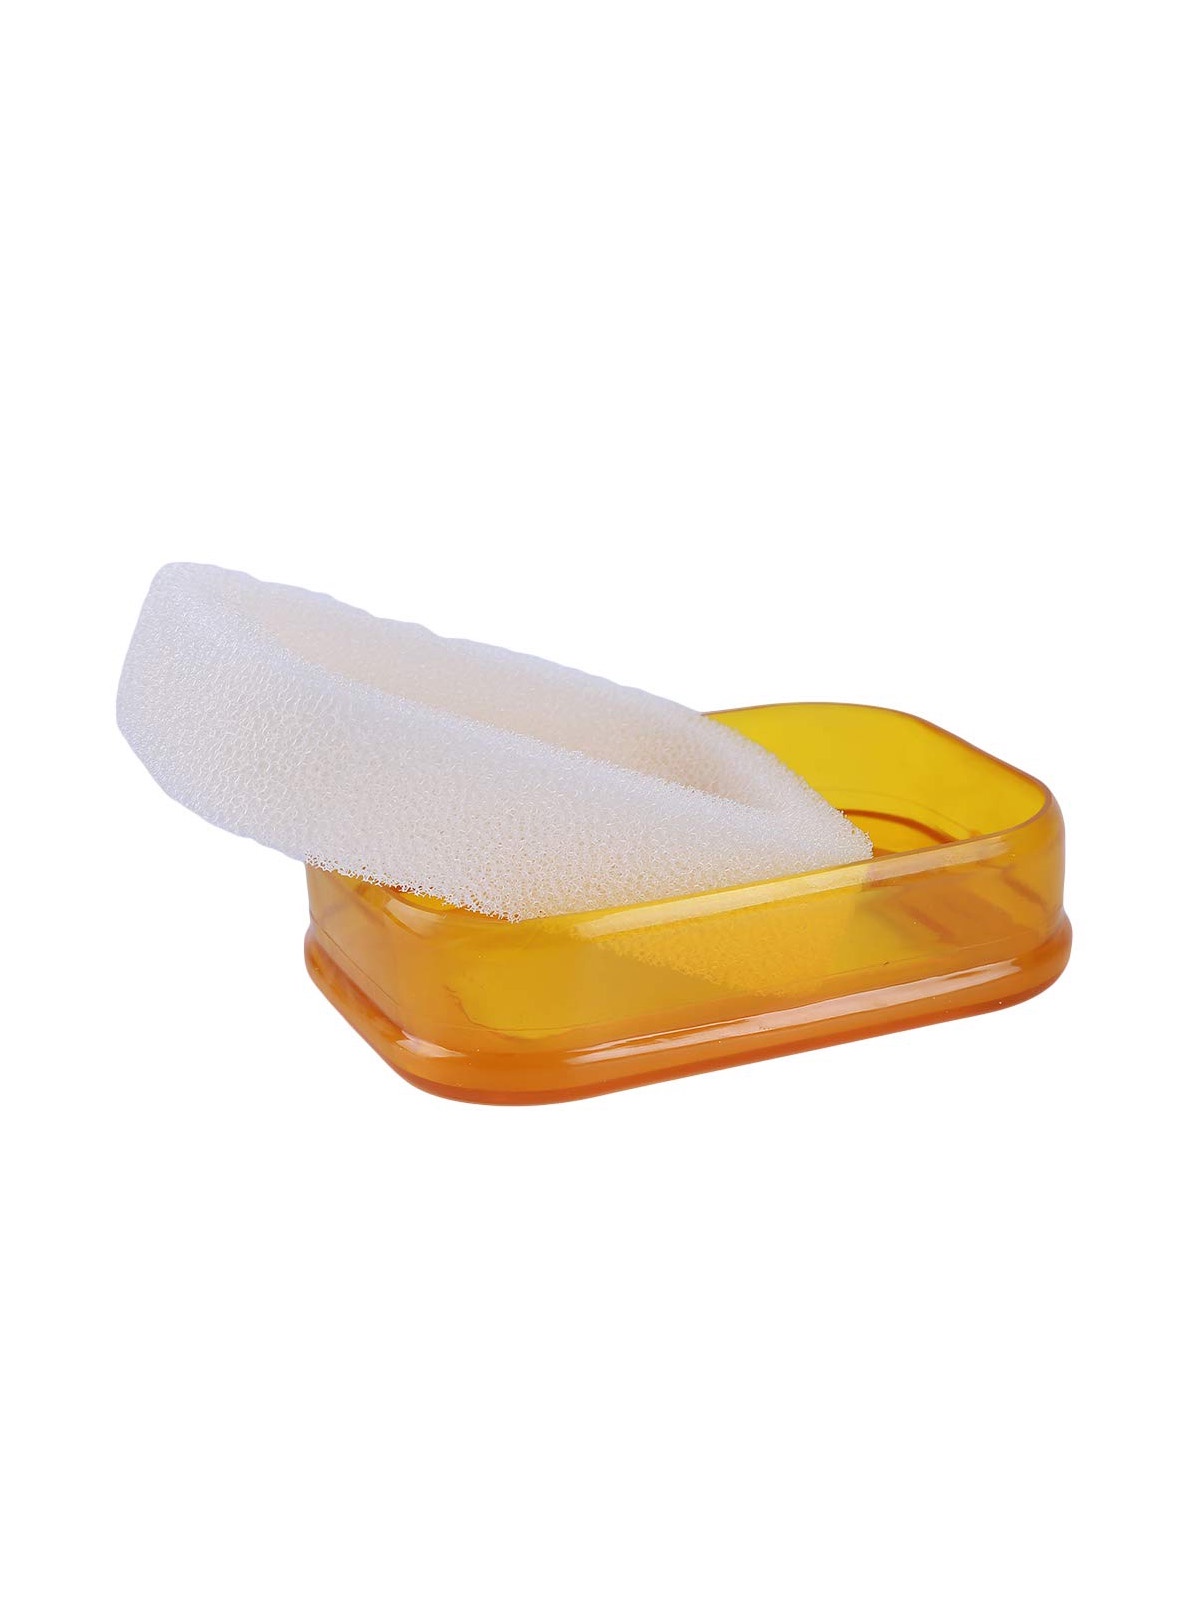 фото Мультифункциональная губка мыльница в пластиковой коробке, мыльница с губкой поролоновой (желт.) Blonder home